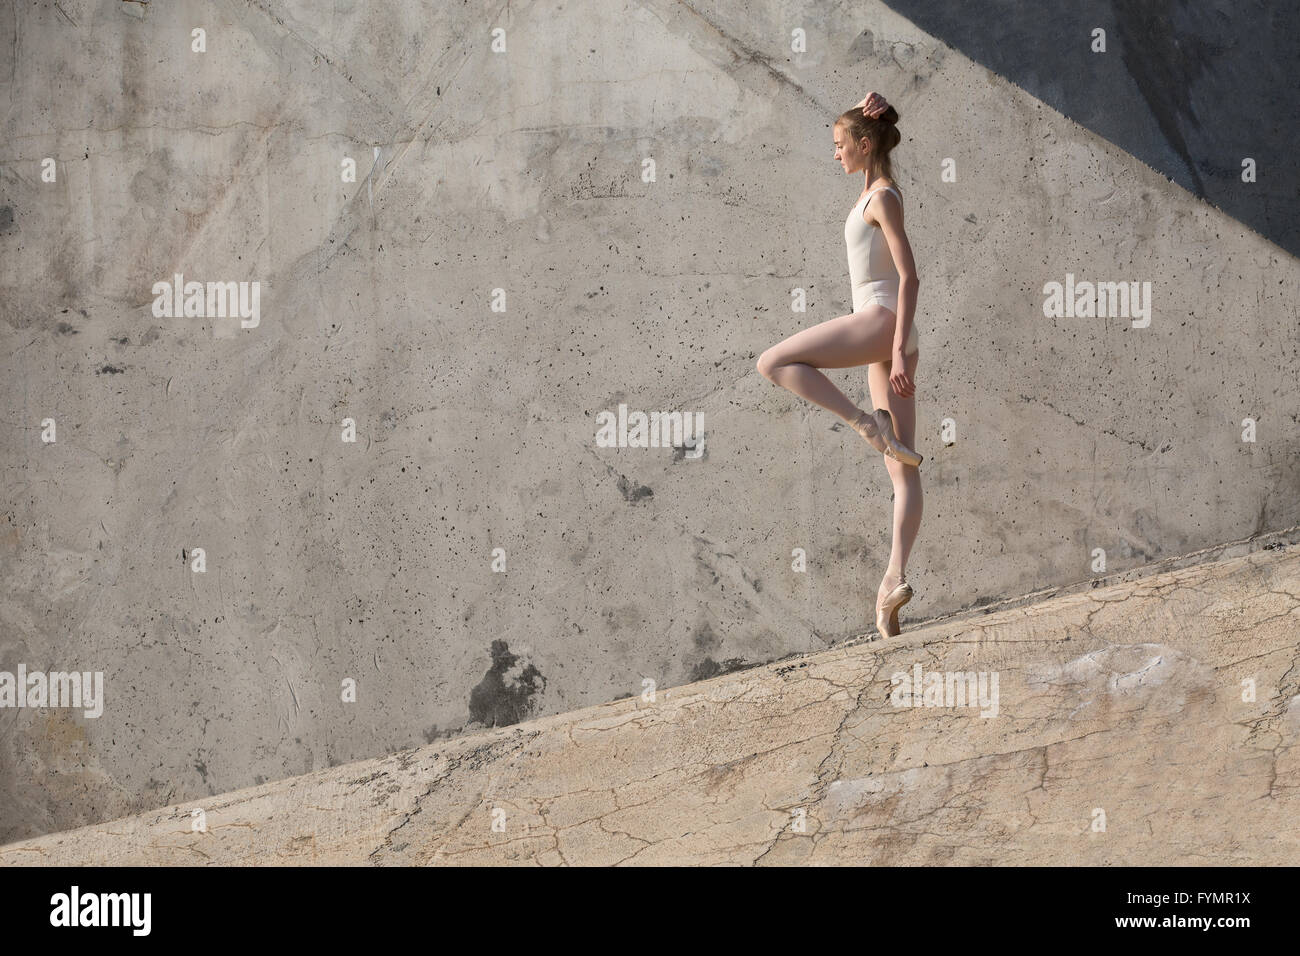 Danseuse Slim est dans une posture de ballet Banque D'Images